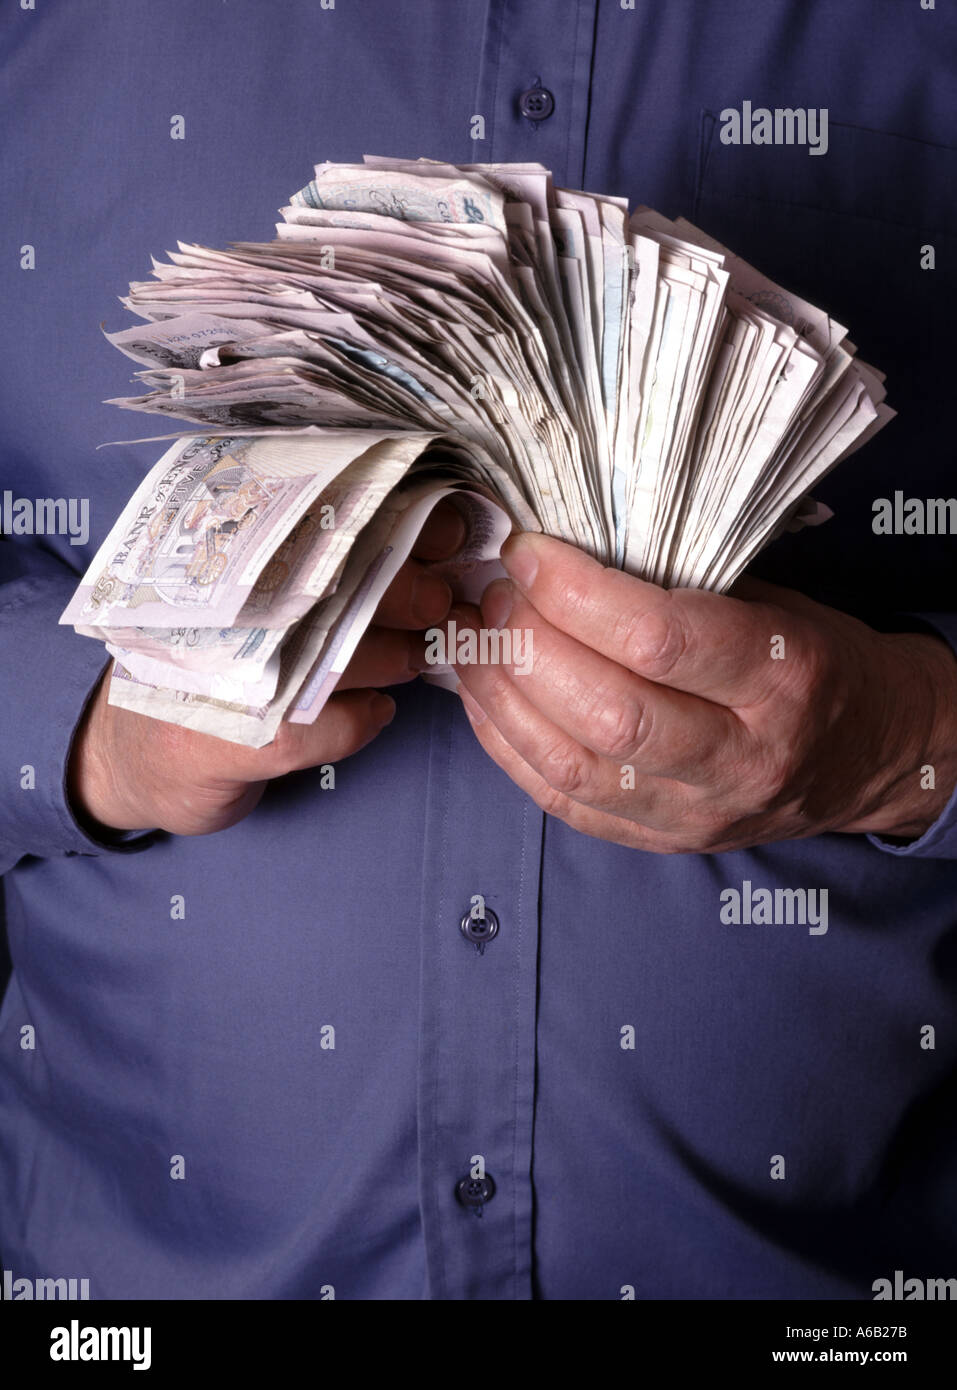 Un uomo d'affari stringe due mani e tiene in mano pile di contanti assortiti in banconote da sterlina prodotte dal modello England UK Foto Stock